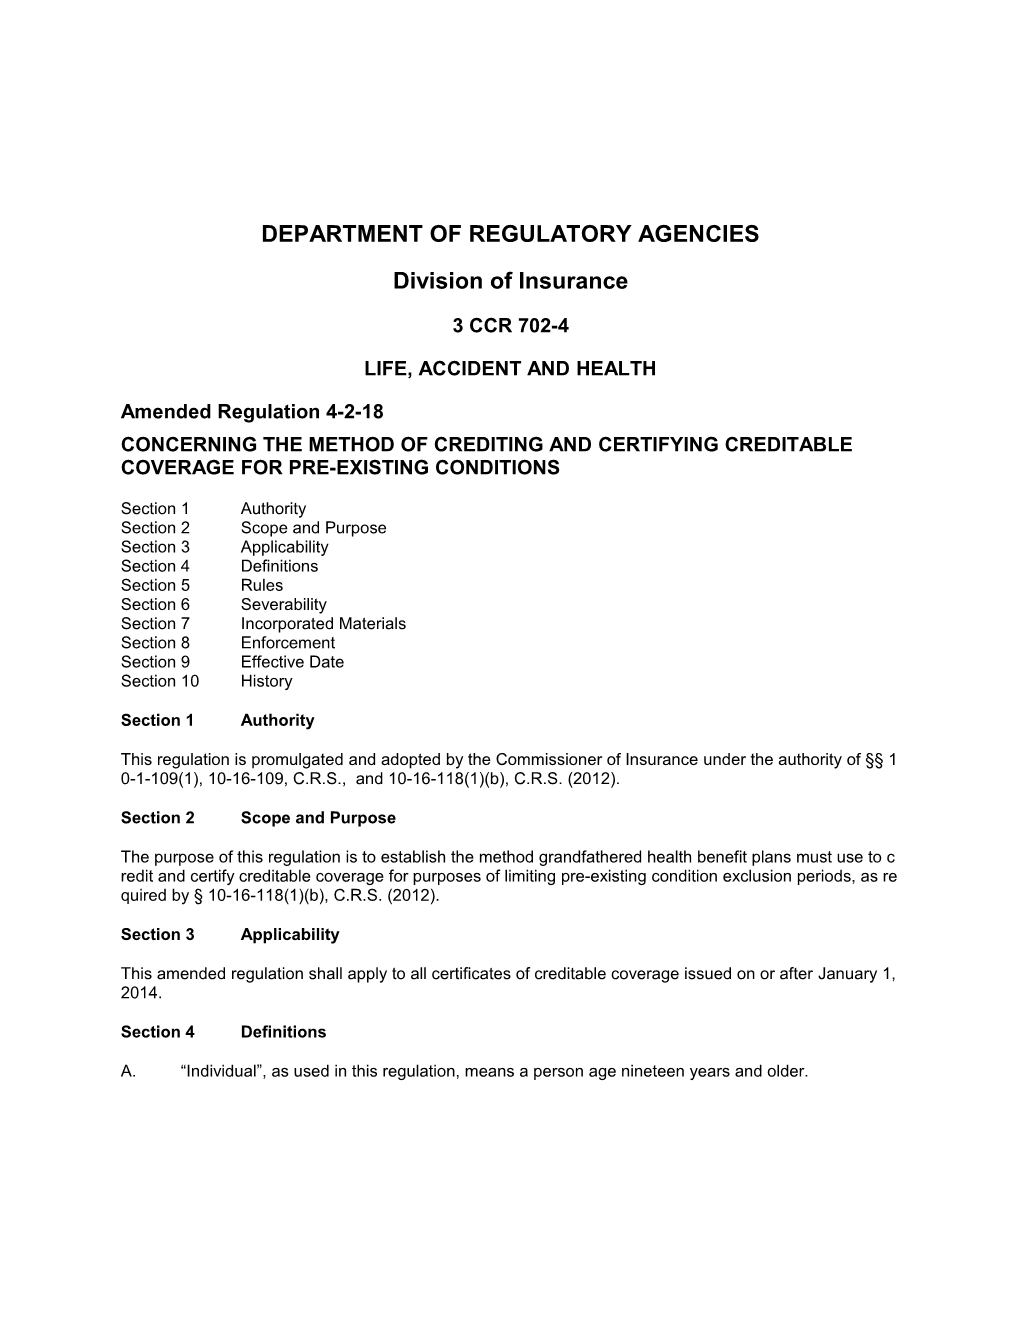 Department of Regulatory Agencies s15